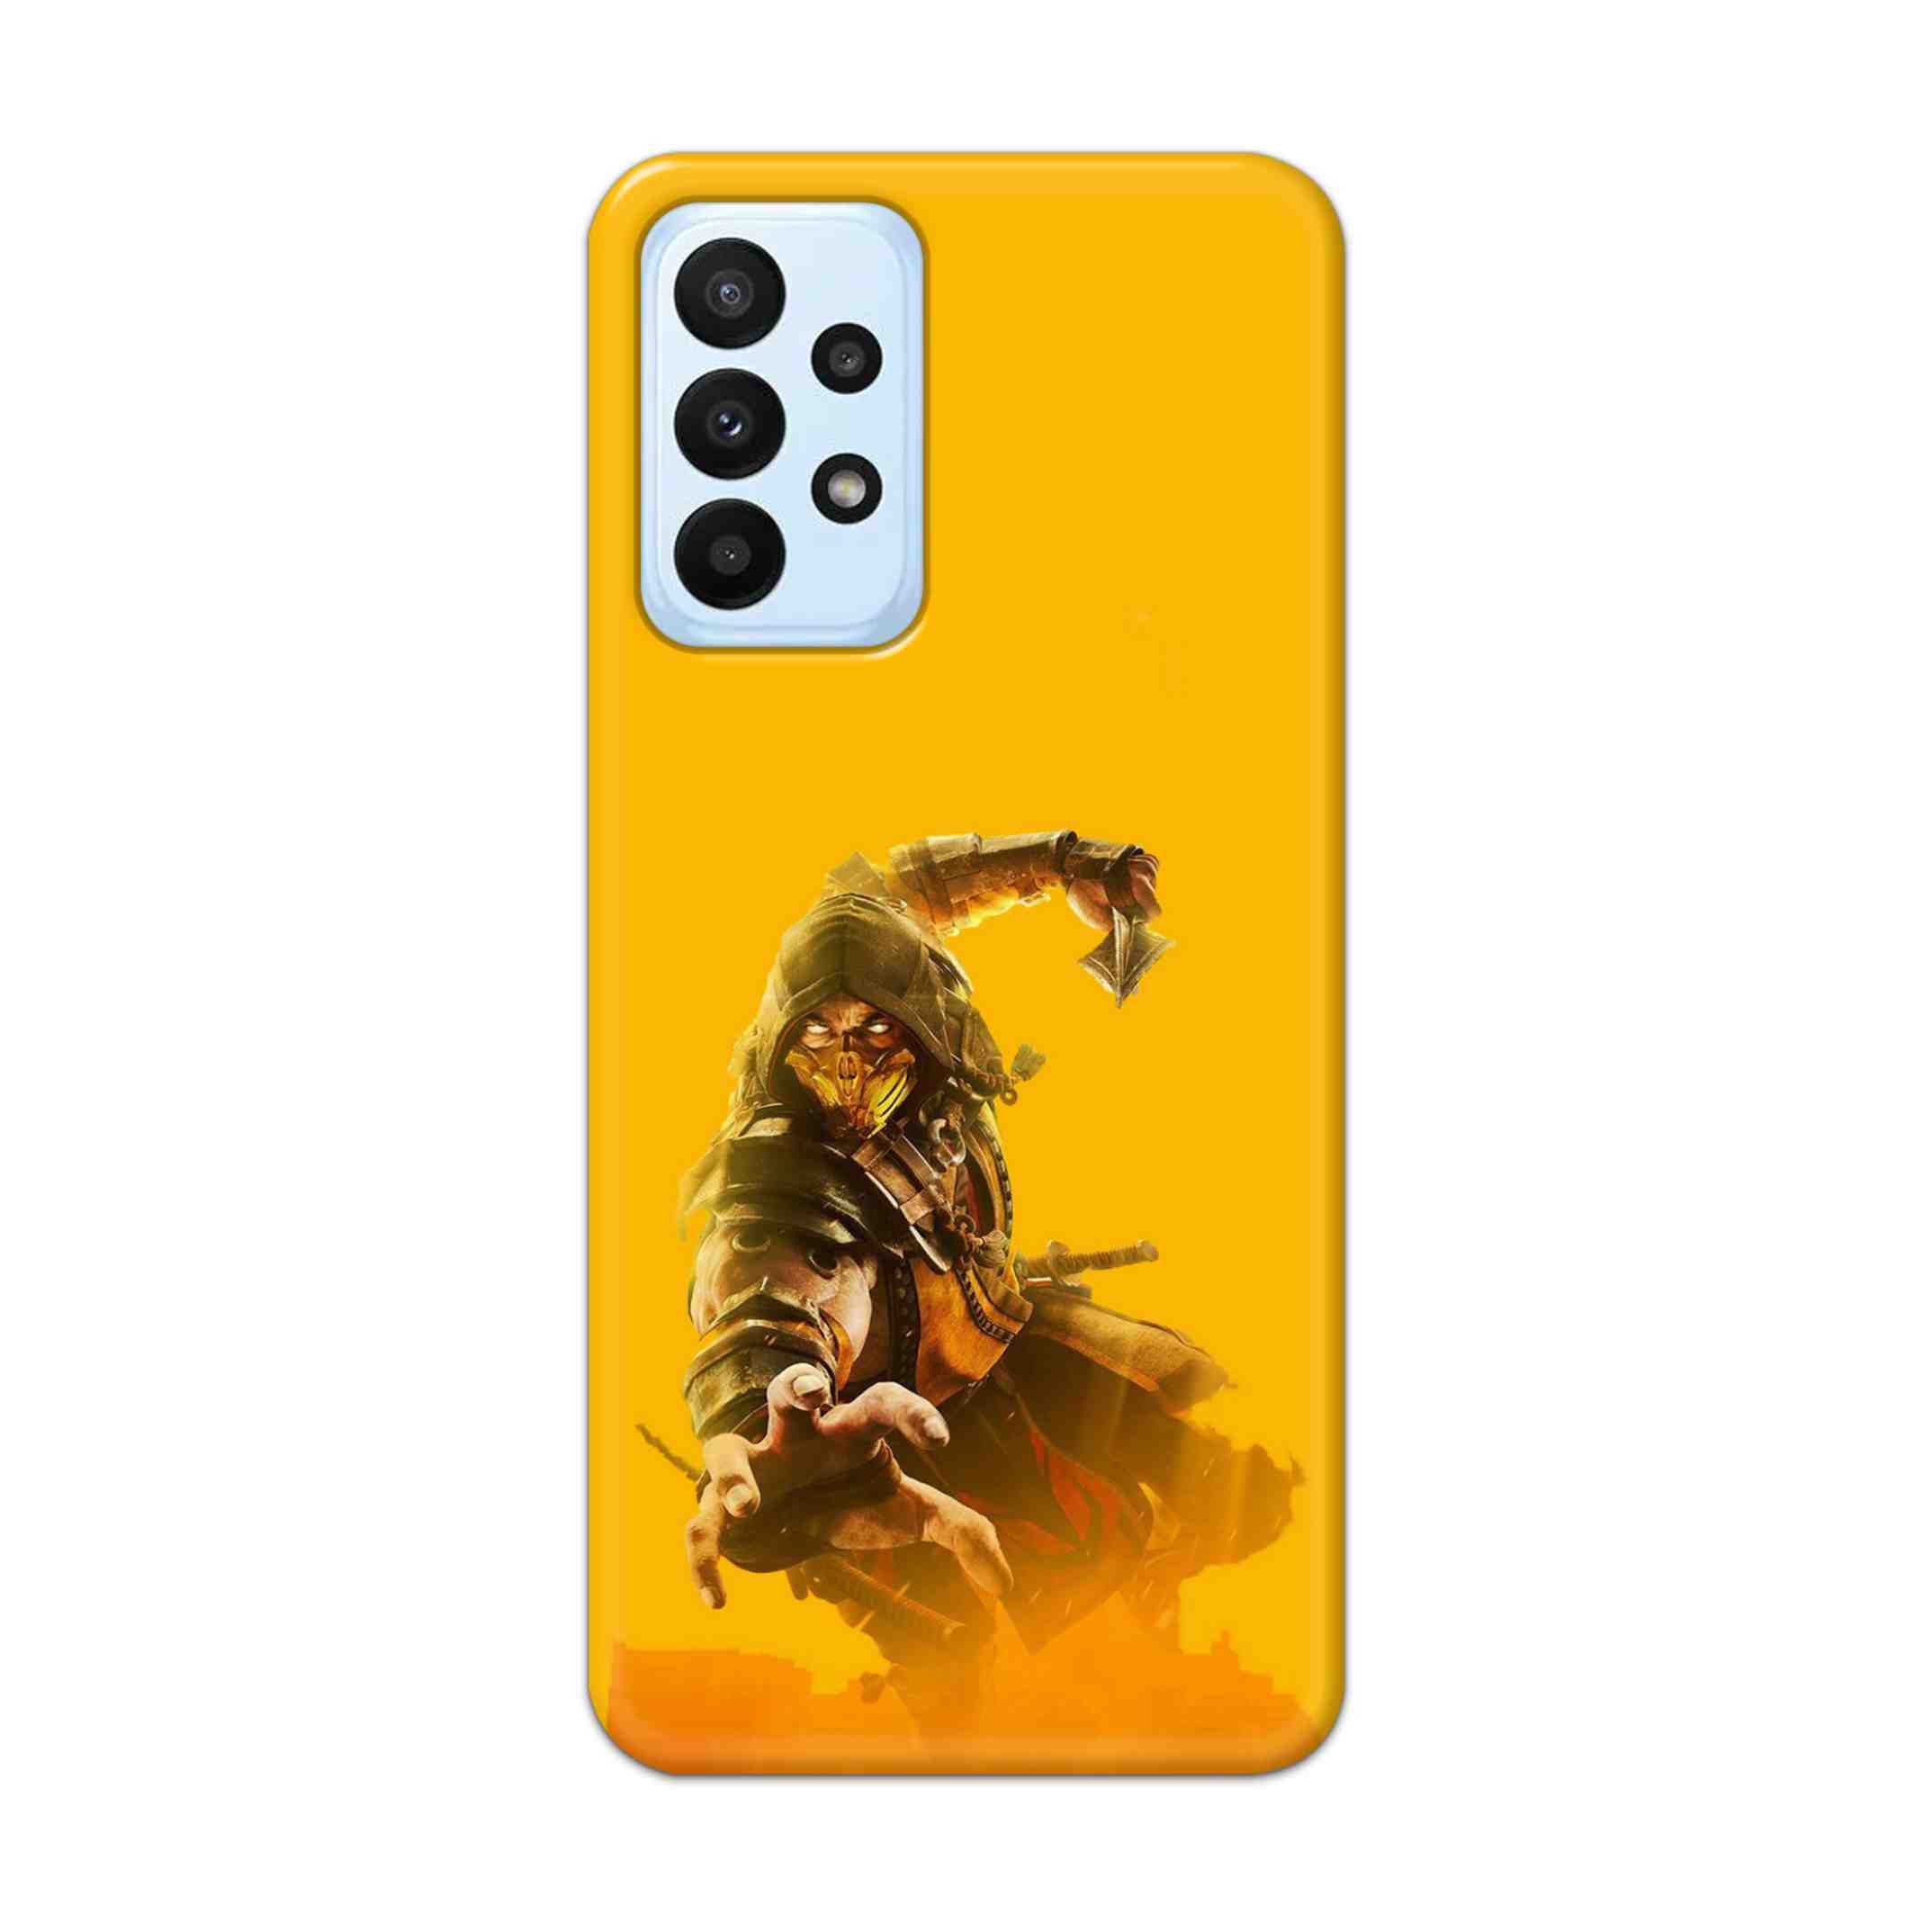 Buy Mortal Kombat Hard Back Mobile Phone Case Cover For Samsung A23 Online